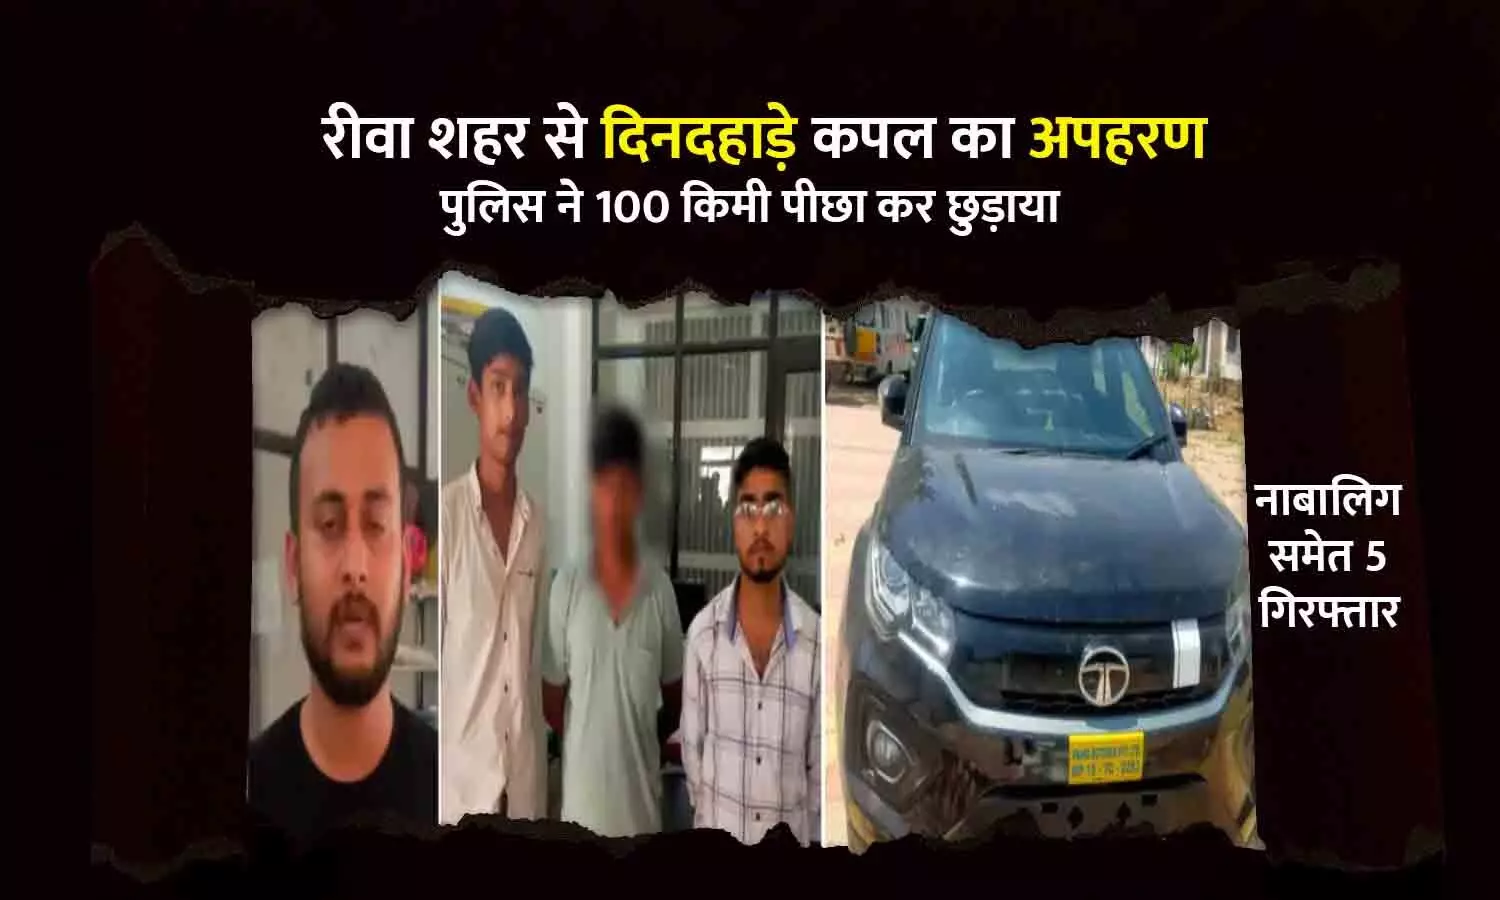 रीवा शहर से दिनदहाड़े कपल का अपहरण, समान पुलिस ने 100 किमी पीछा कर छुड़ाया, नाबालिग समेत 5 गिरफ्तार